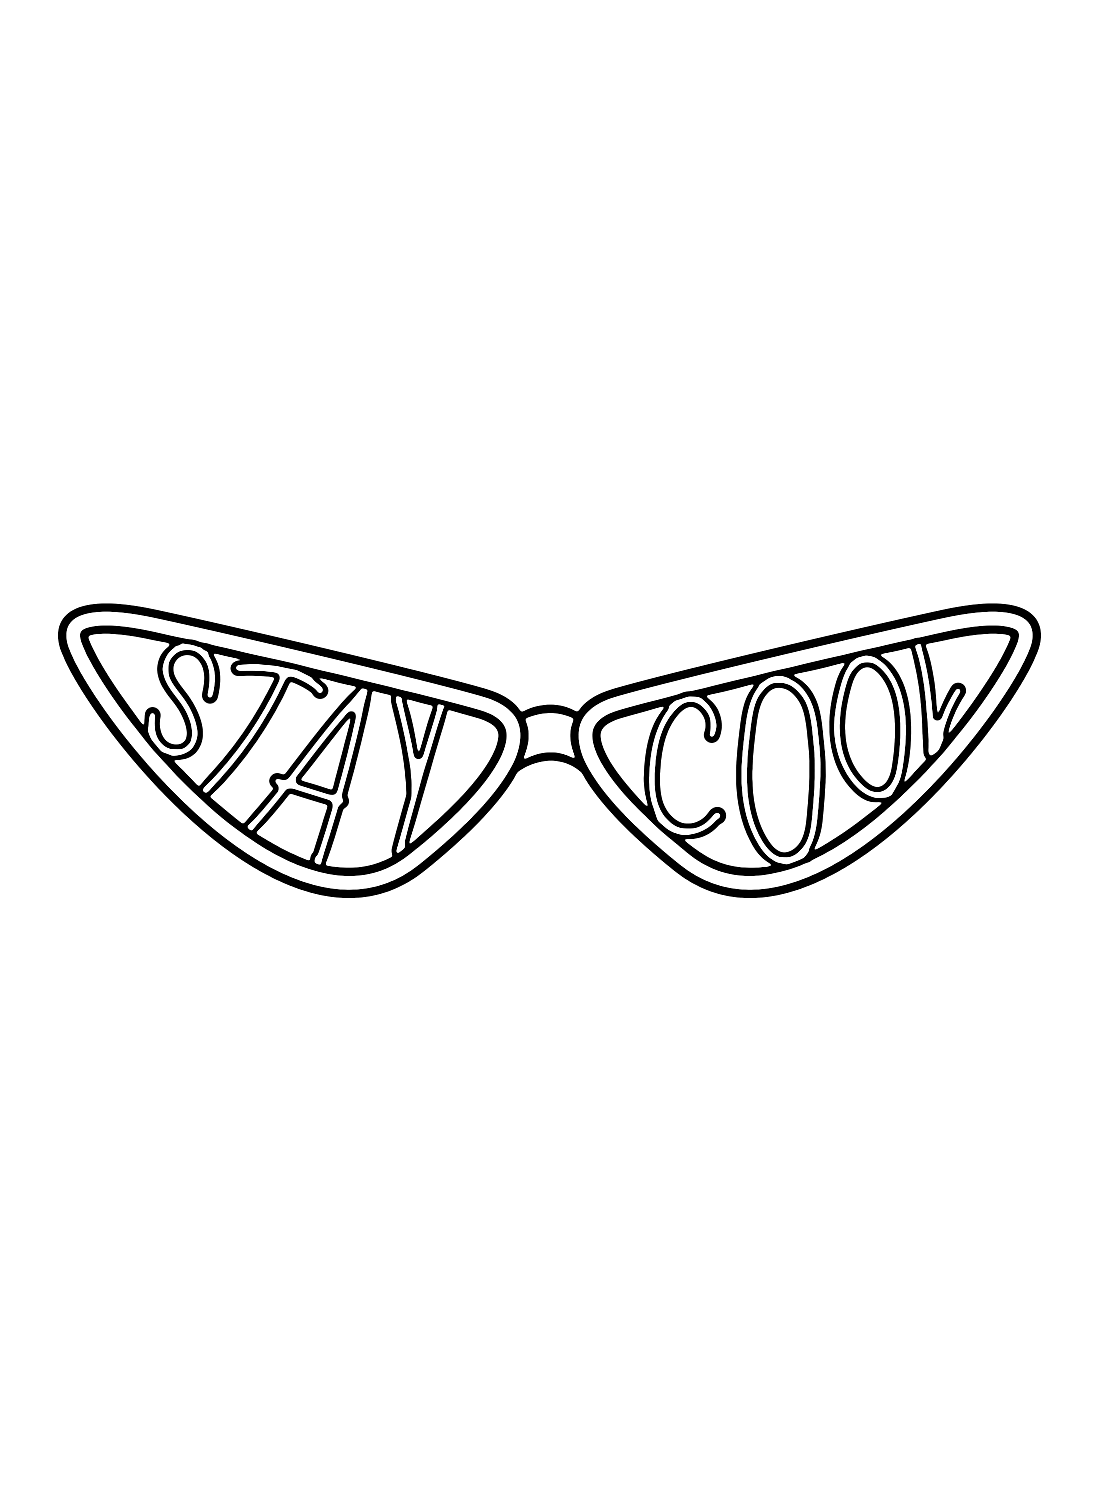 نظارات شمسية مع عبارة Stay Cool من النظارات الشمسية